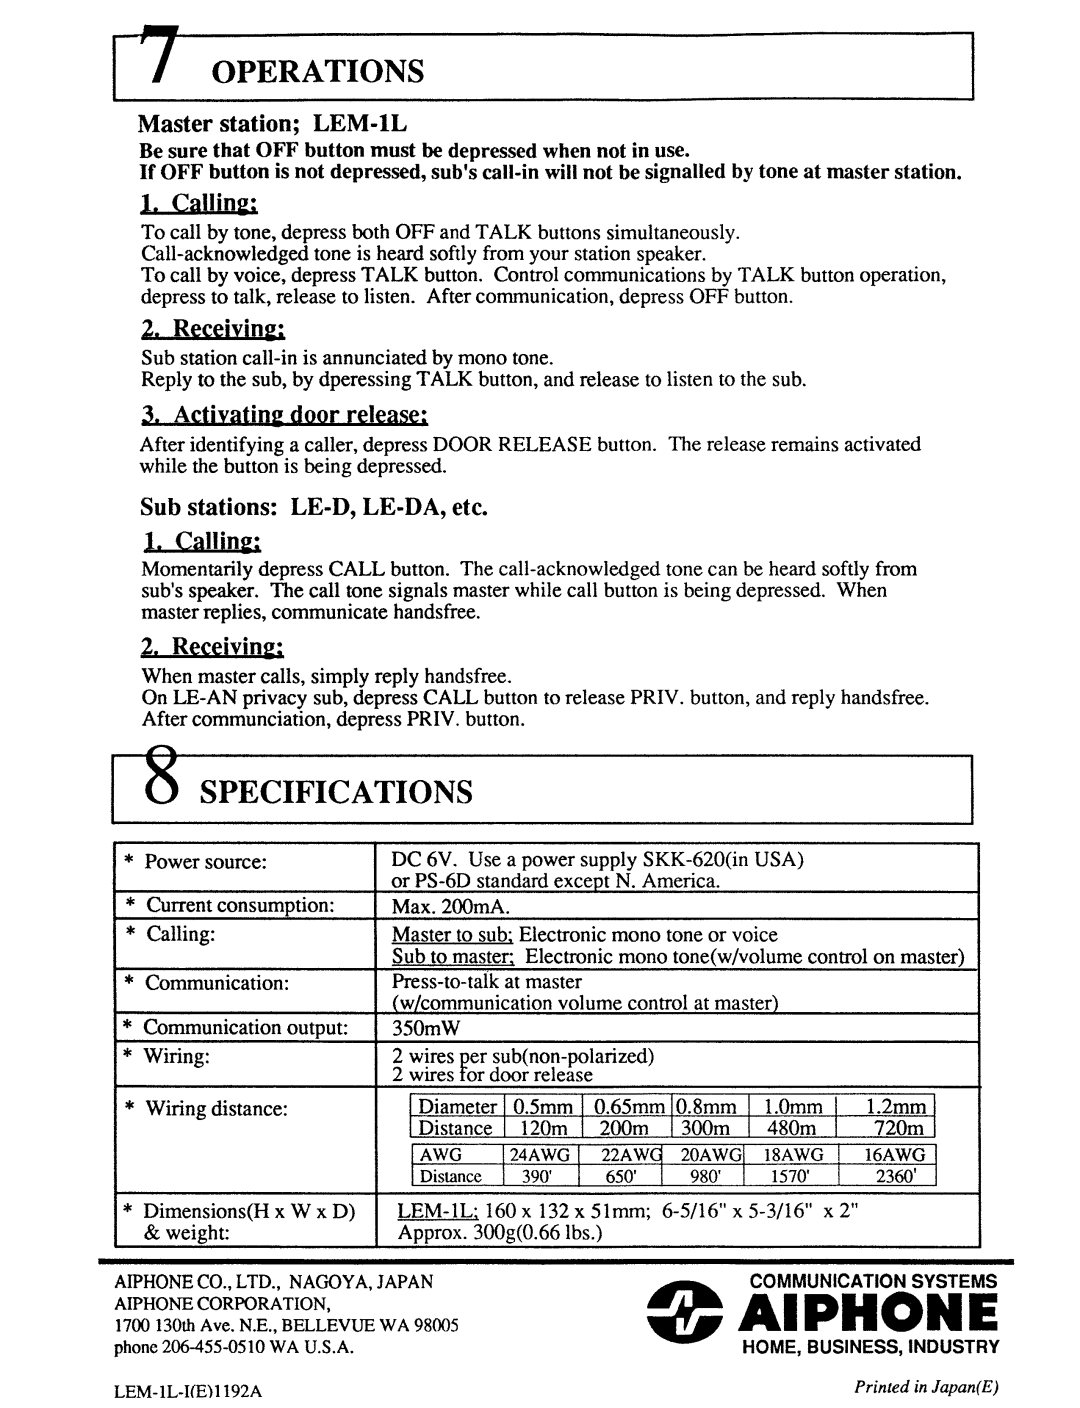 Aiphone LEM-1L manual 